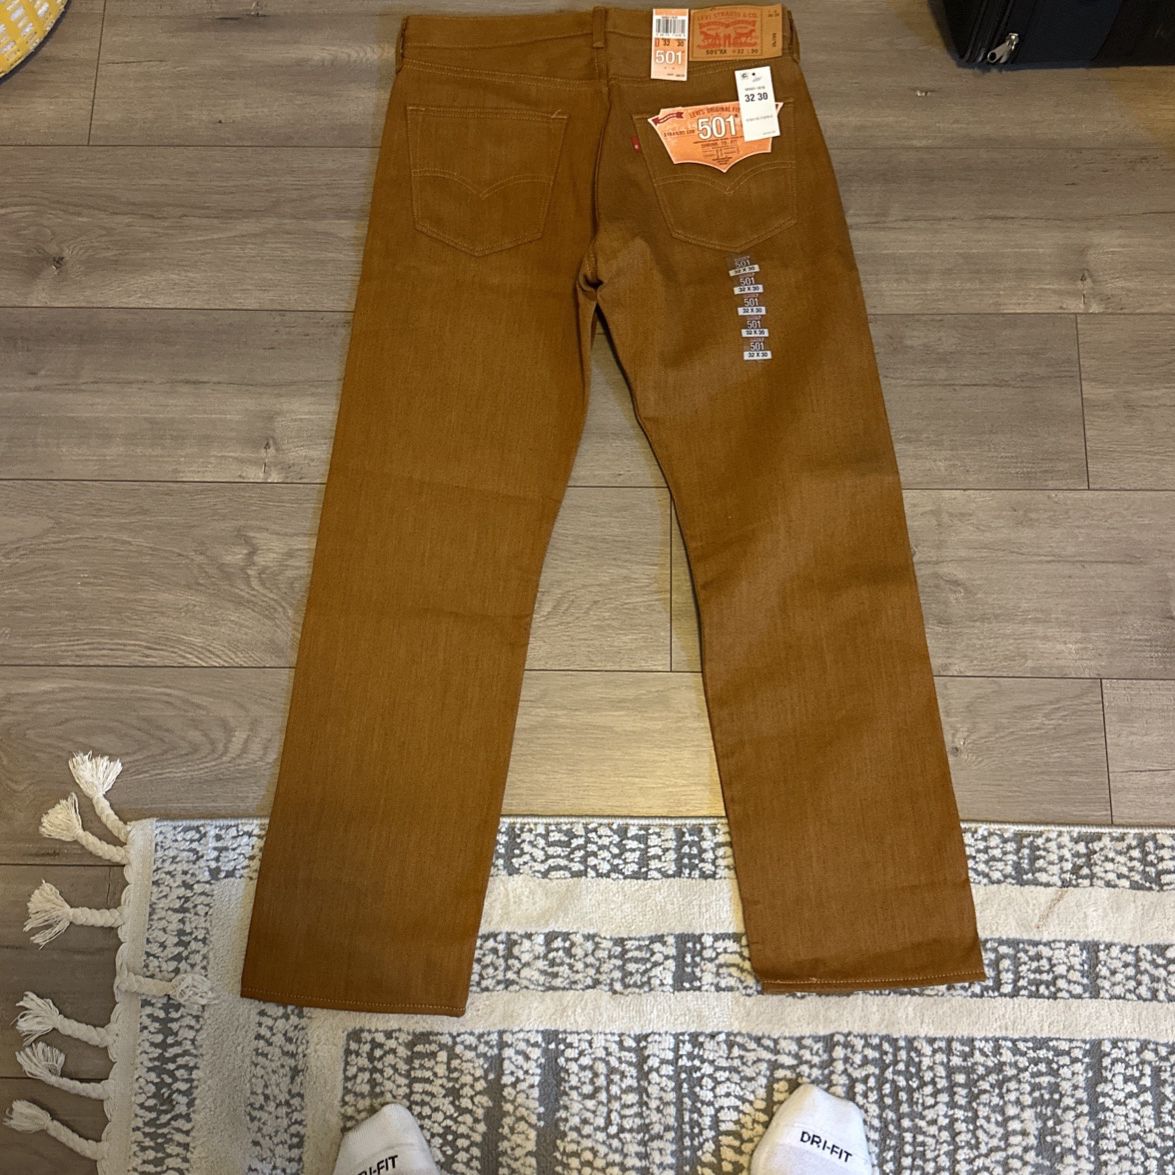 501 Levi’s Jeans 